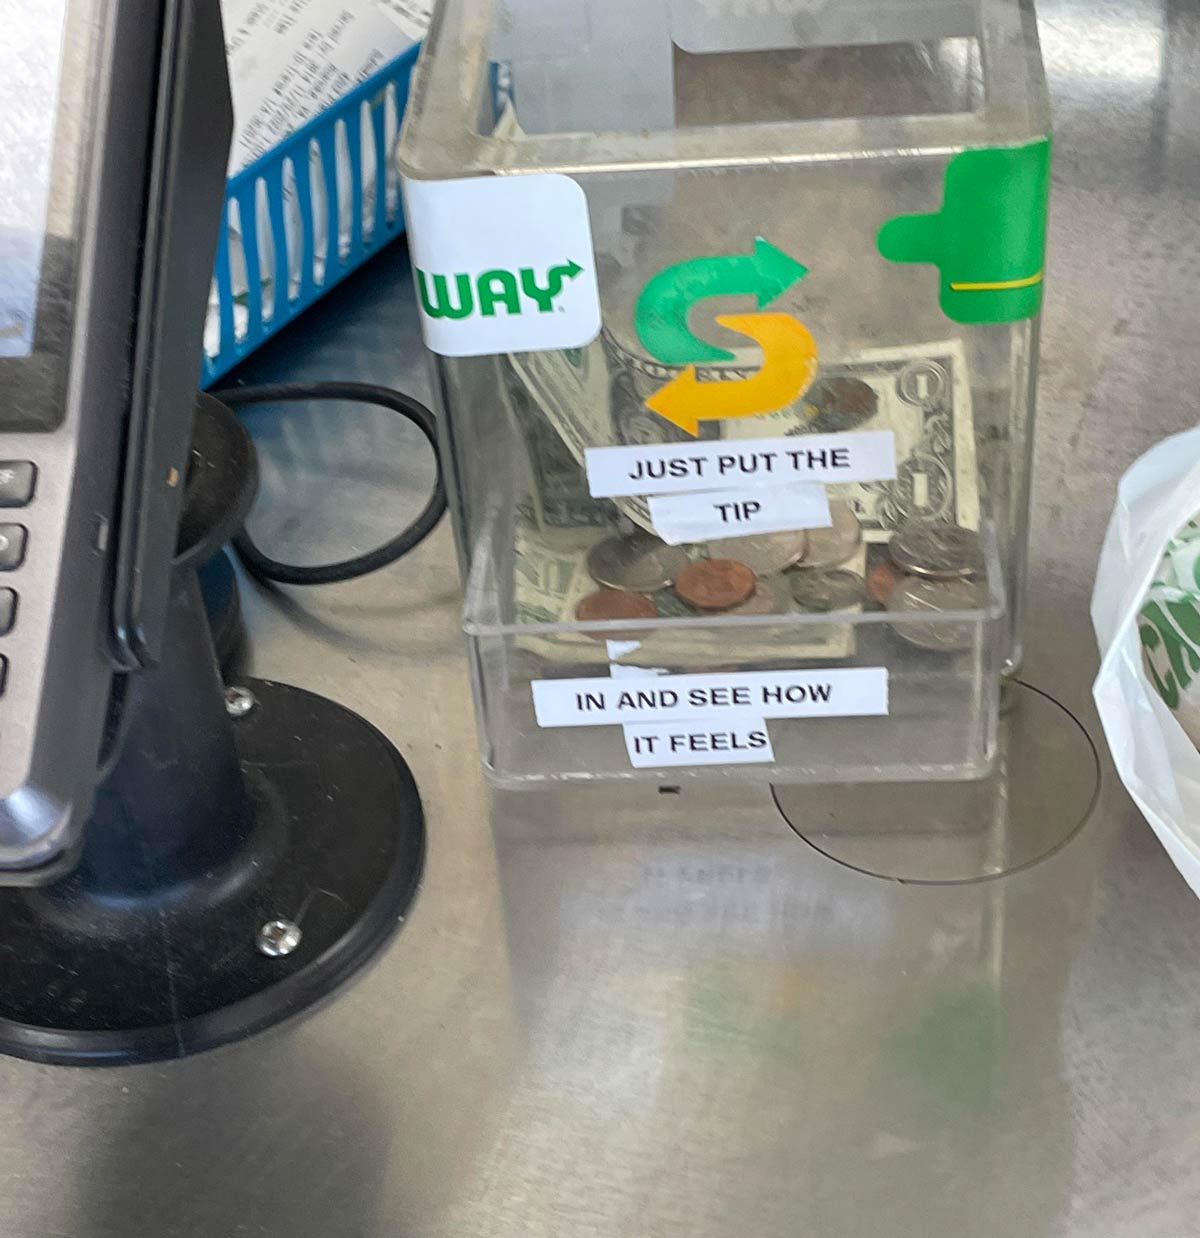 This tip jar at Subway